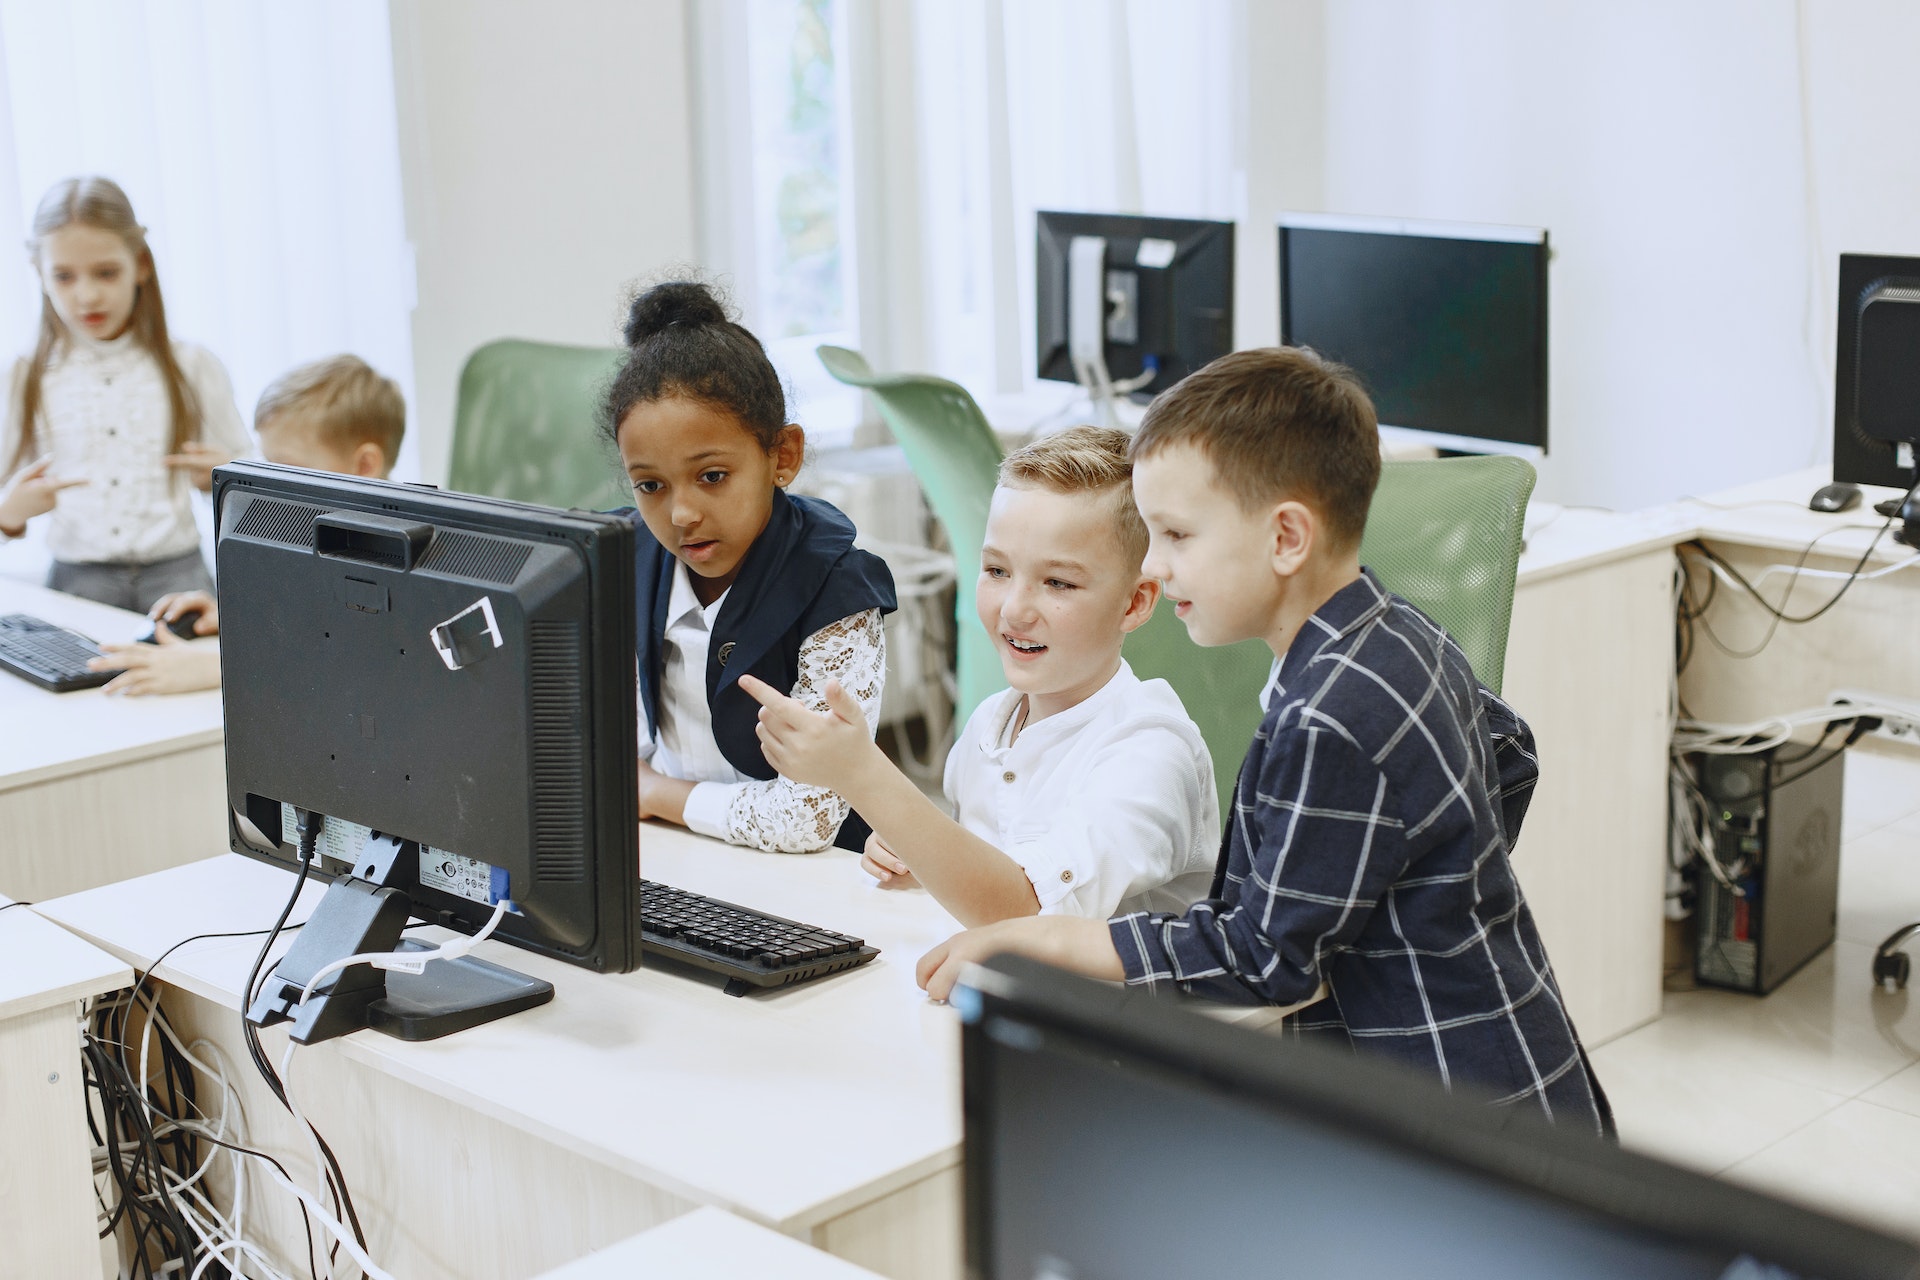 Kinder sitzen gemeinsam vor einen Bildschirm und ein Schüler zeigt darauf.